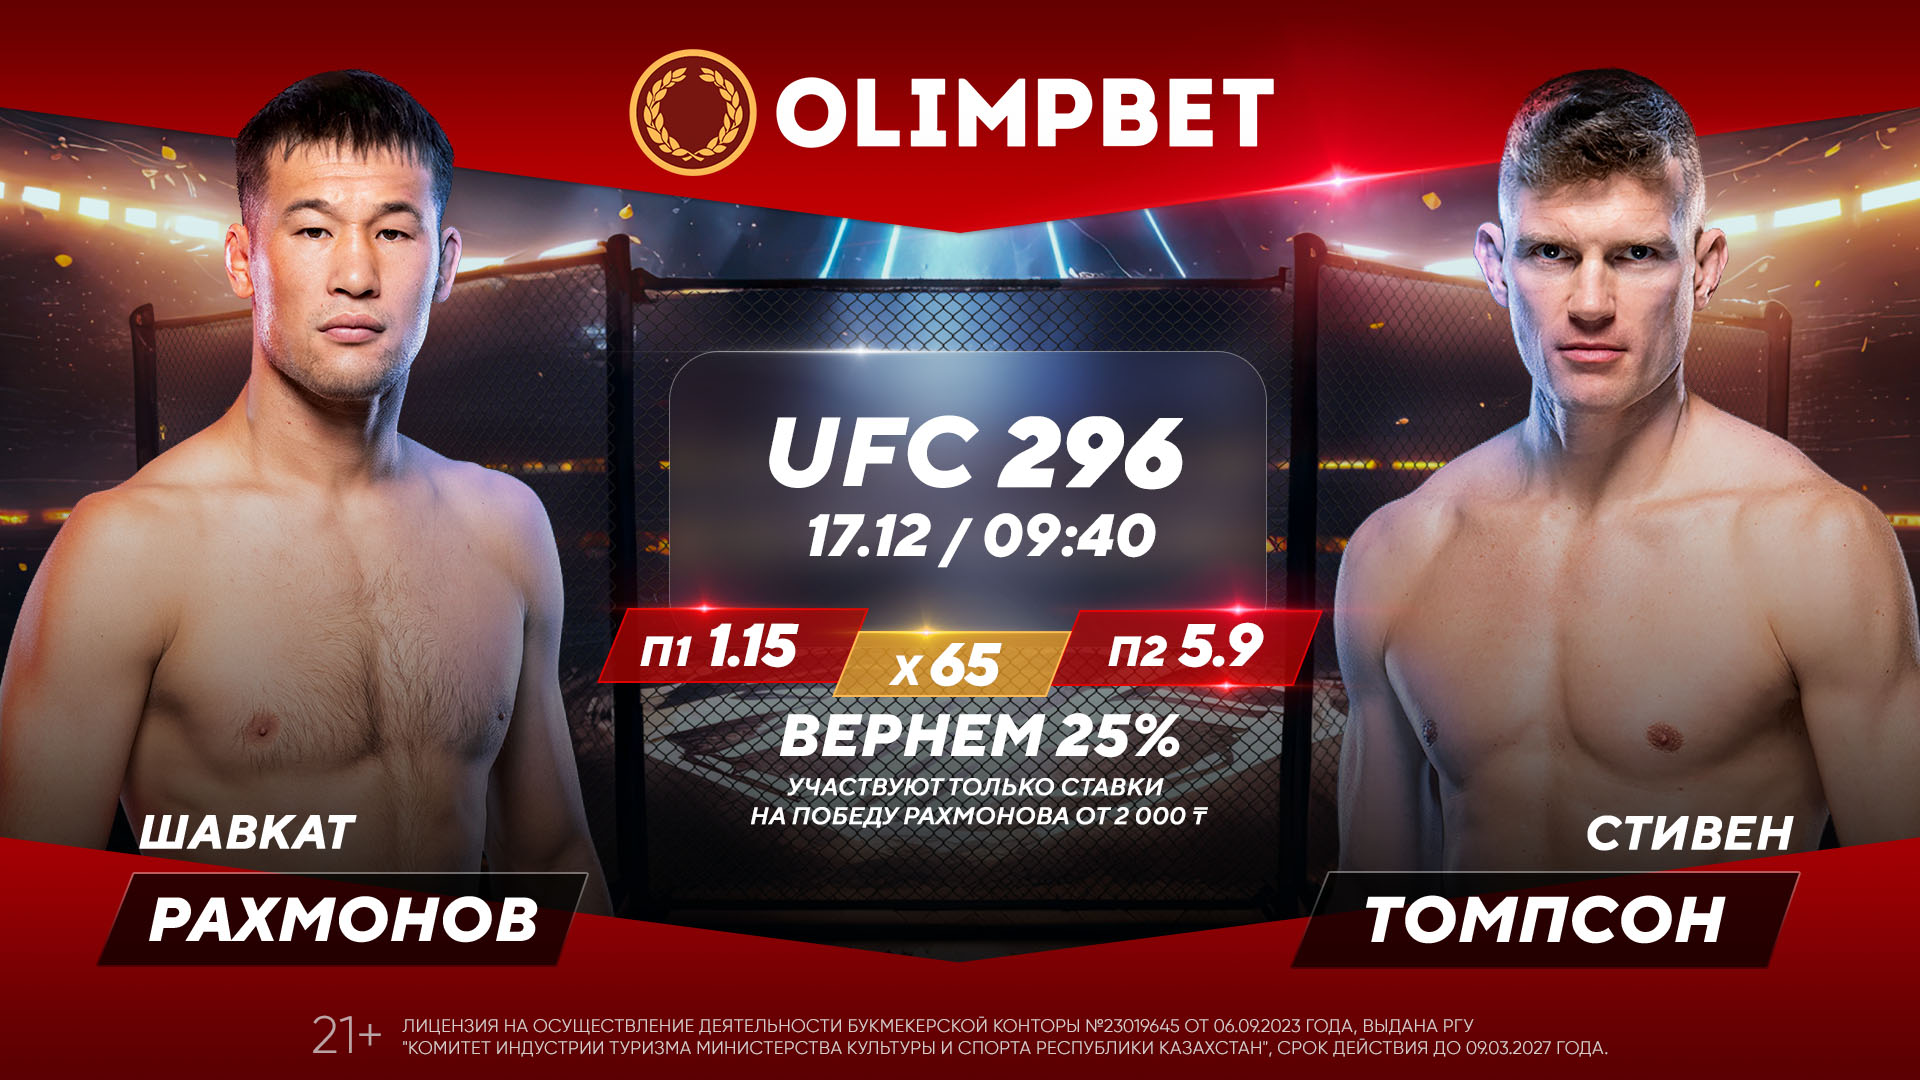 БК Olimpbet предлагает кэшбэк 25% за ставку на бой Рахмонов – Томпсон в UFC 296